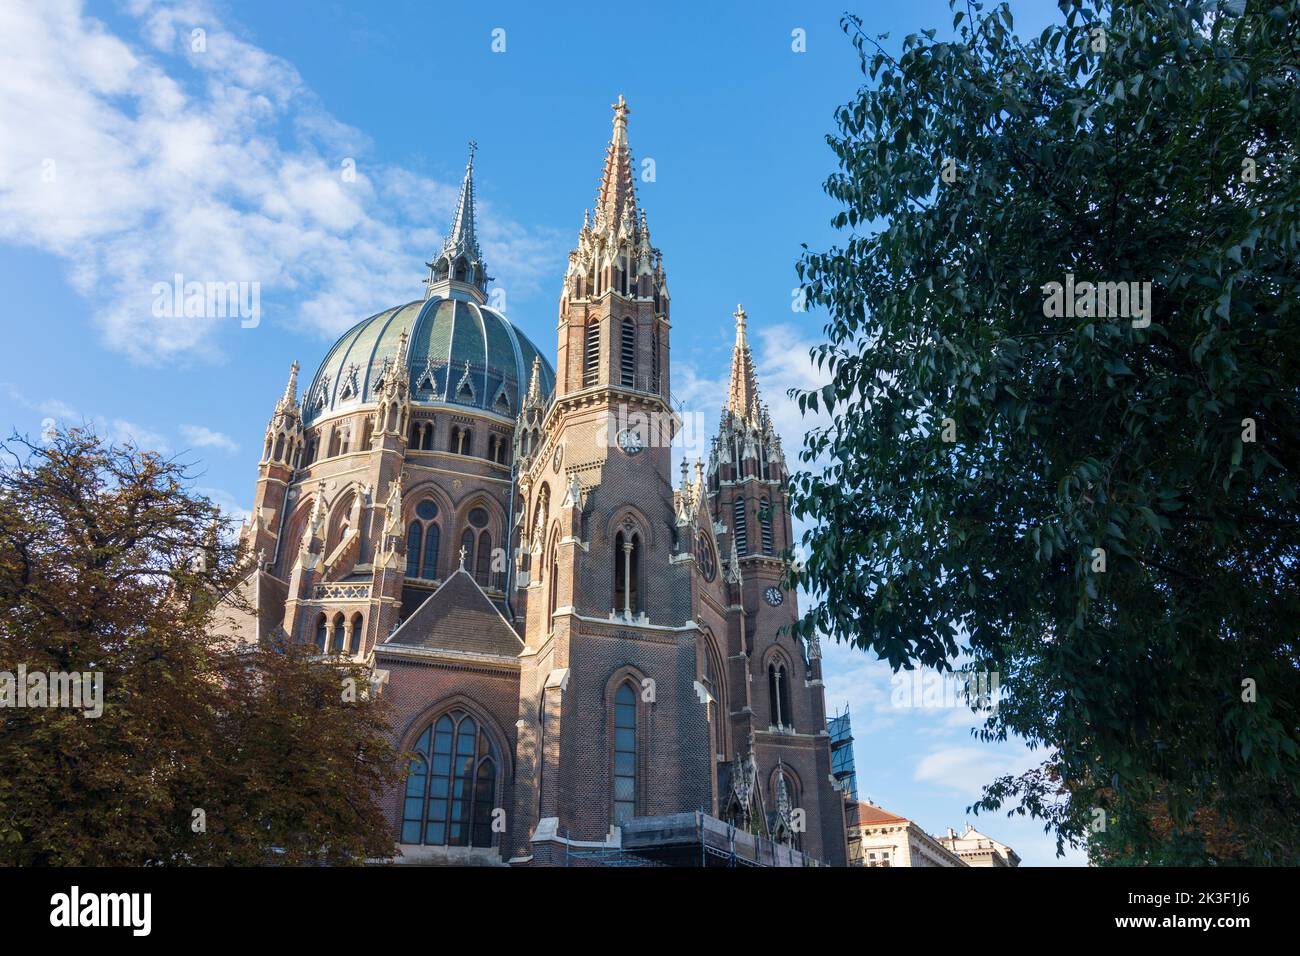 Wien, Viena: iglesia Maria vom Siege en 15. Rudolfsheim-Fünfhaus, Viena, Austria Foto de stock